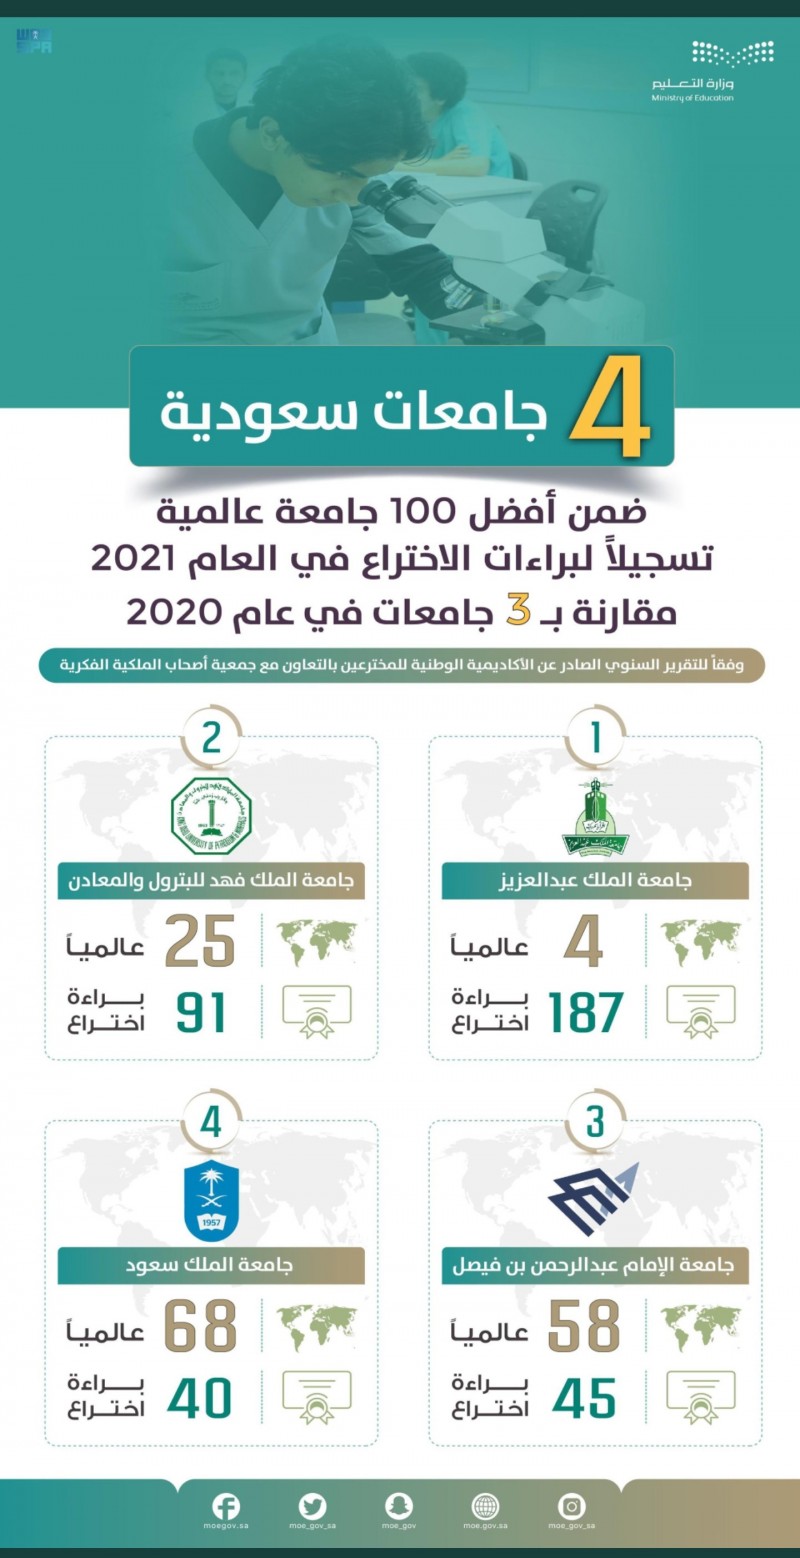 4 جامعات سعودية ضمن أفضل 100 جامعة عالمية تسجيلًا لبراءات الاختراع في العام 2021